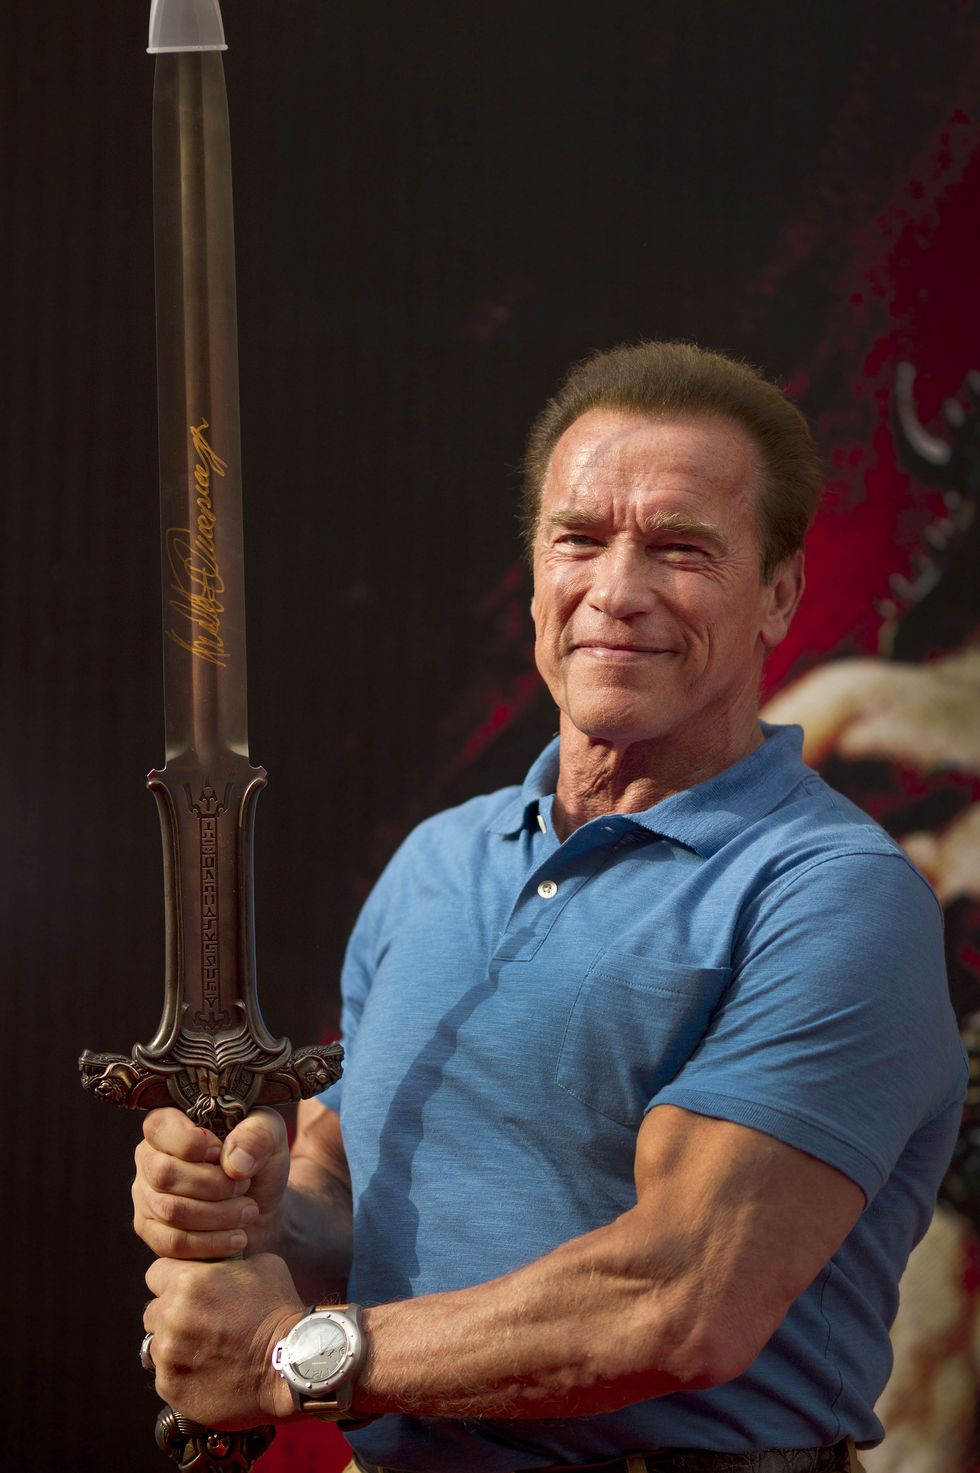 Arnold Schwarzenegger dejó de entrenar para grabar Conan el